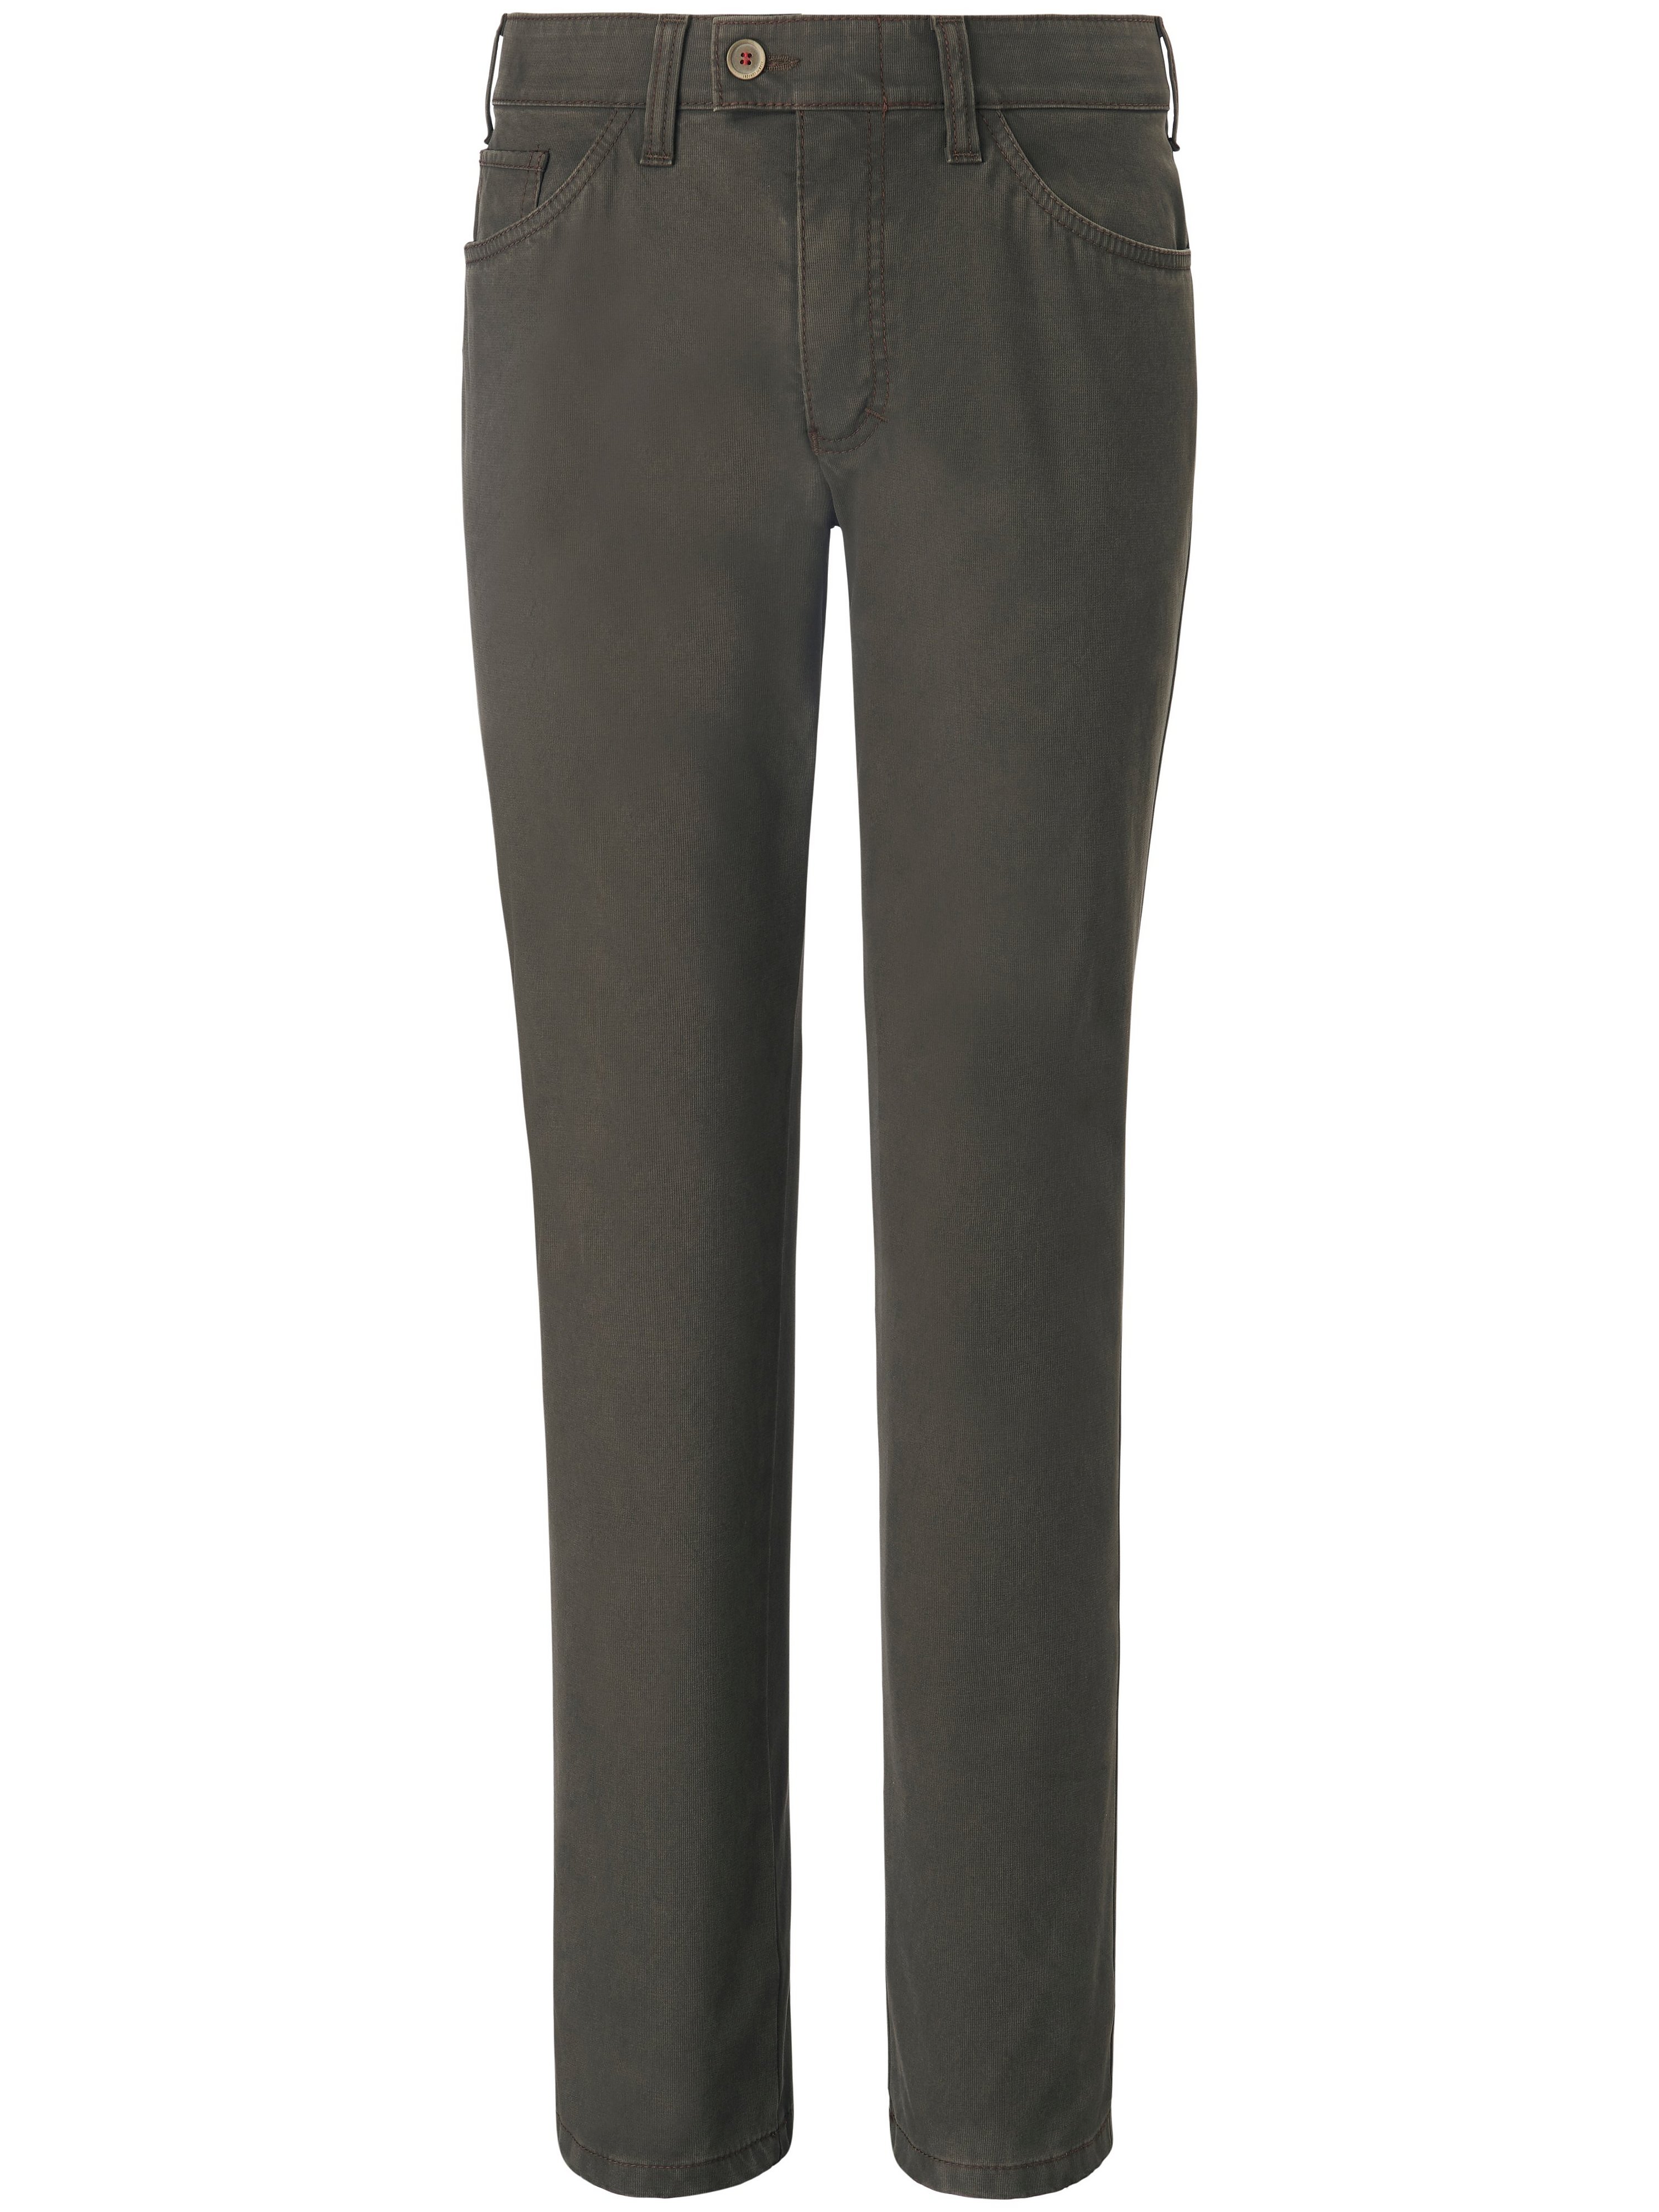 Pantalon chaud modèle Keno à taille confortable  CLUB OF COMFORT vert taille 27